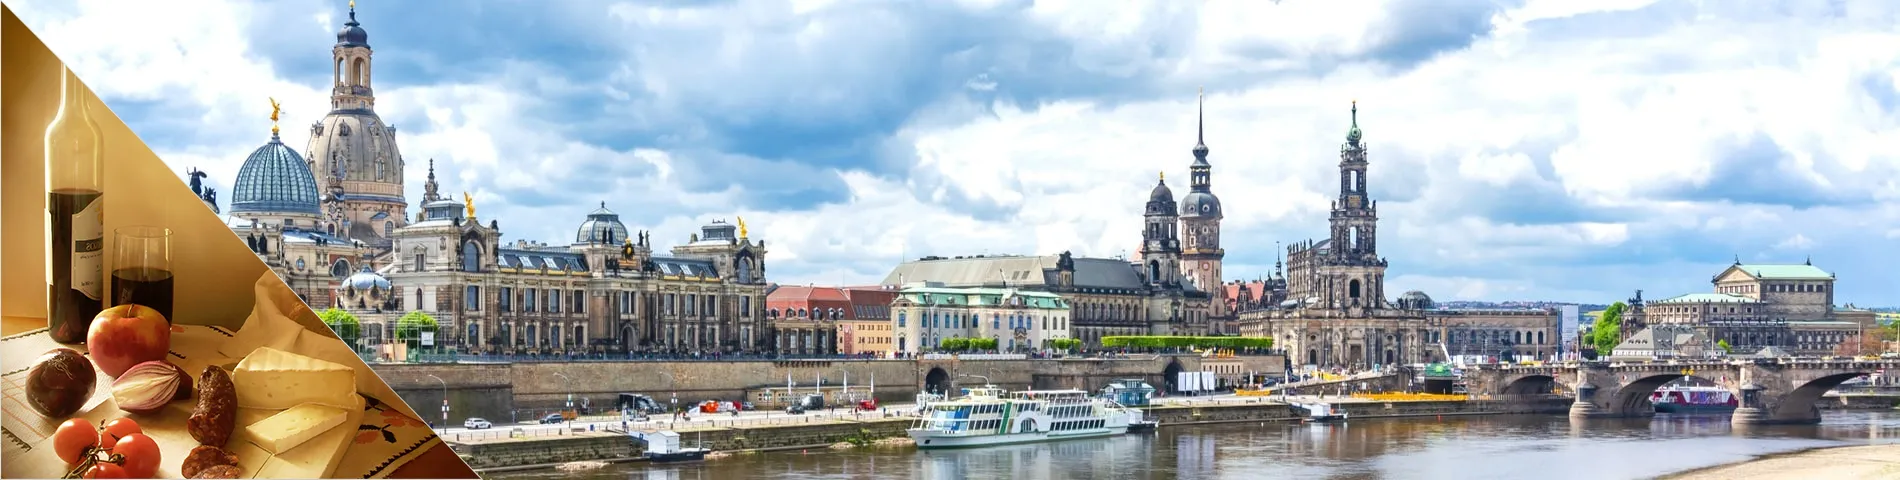 Дрезден - Немецкий и культура